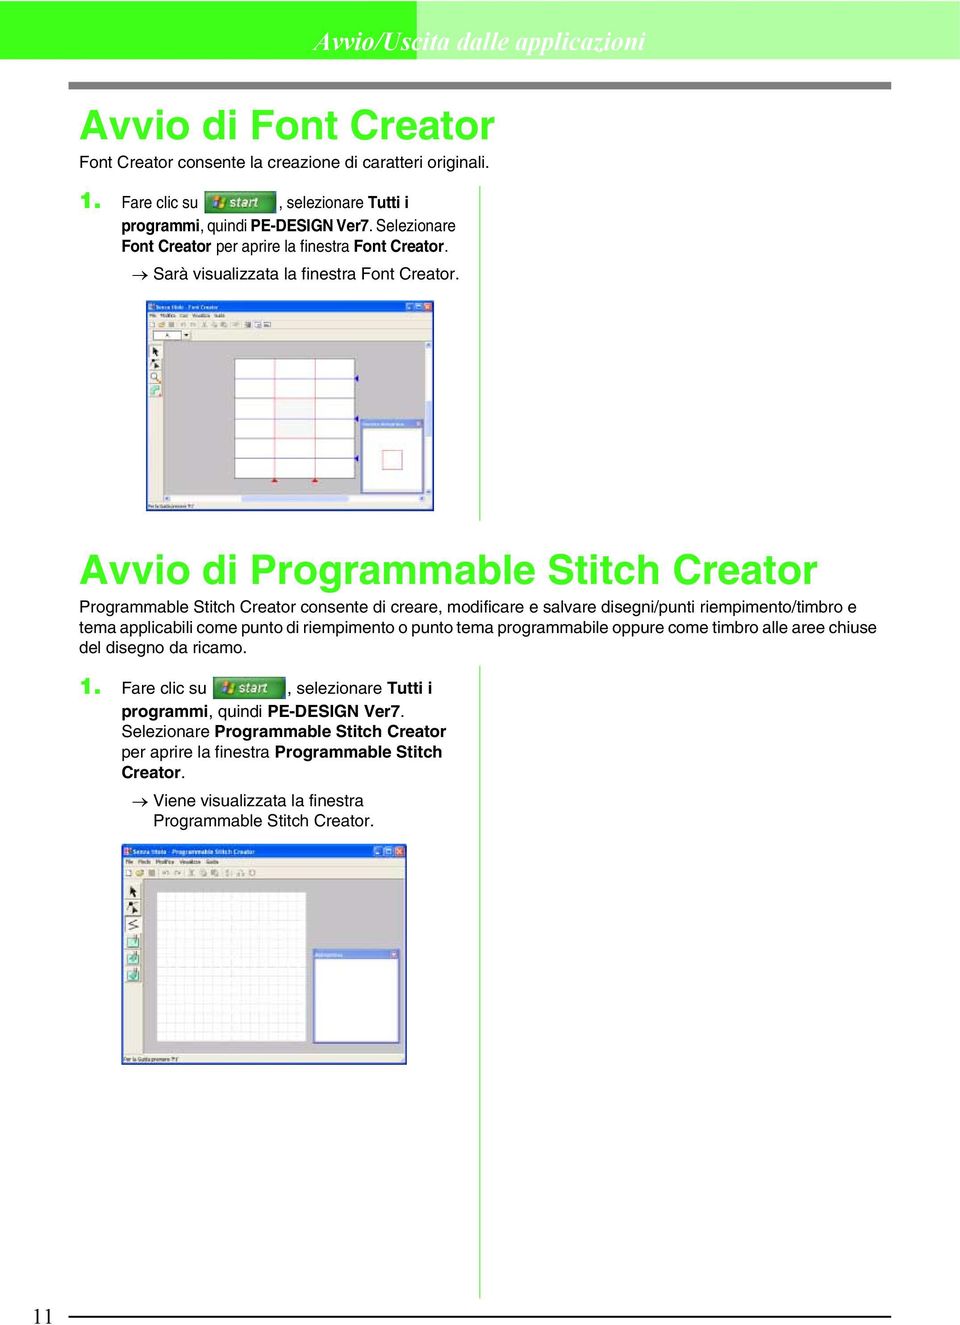 Avvio di Programmable Stitch Creator Programmable Stitch Creator consente di creare, modificare e salvare disegni/punti riempimento/timbro e tema applicabili come punto di riempimento o punto tema